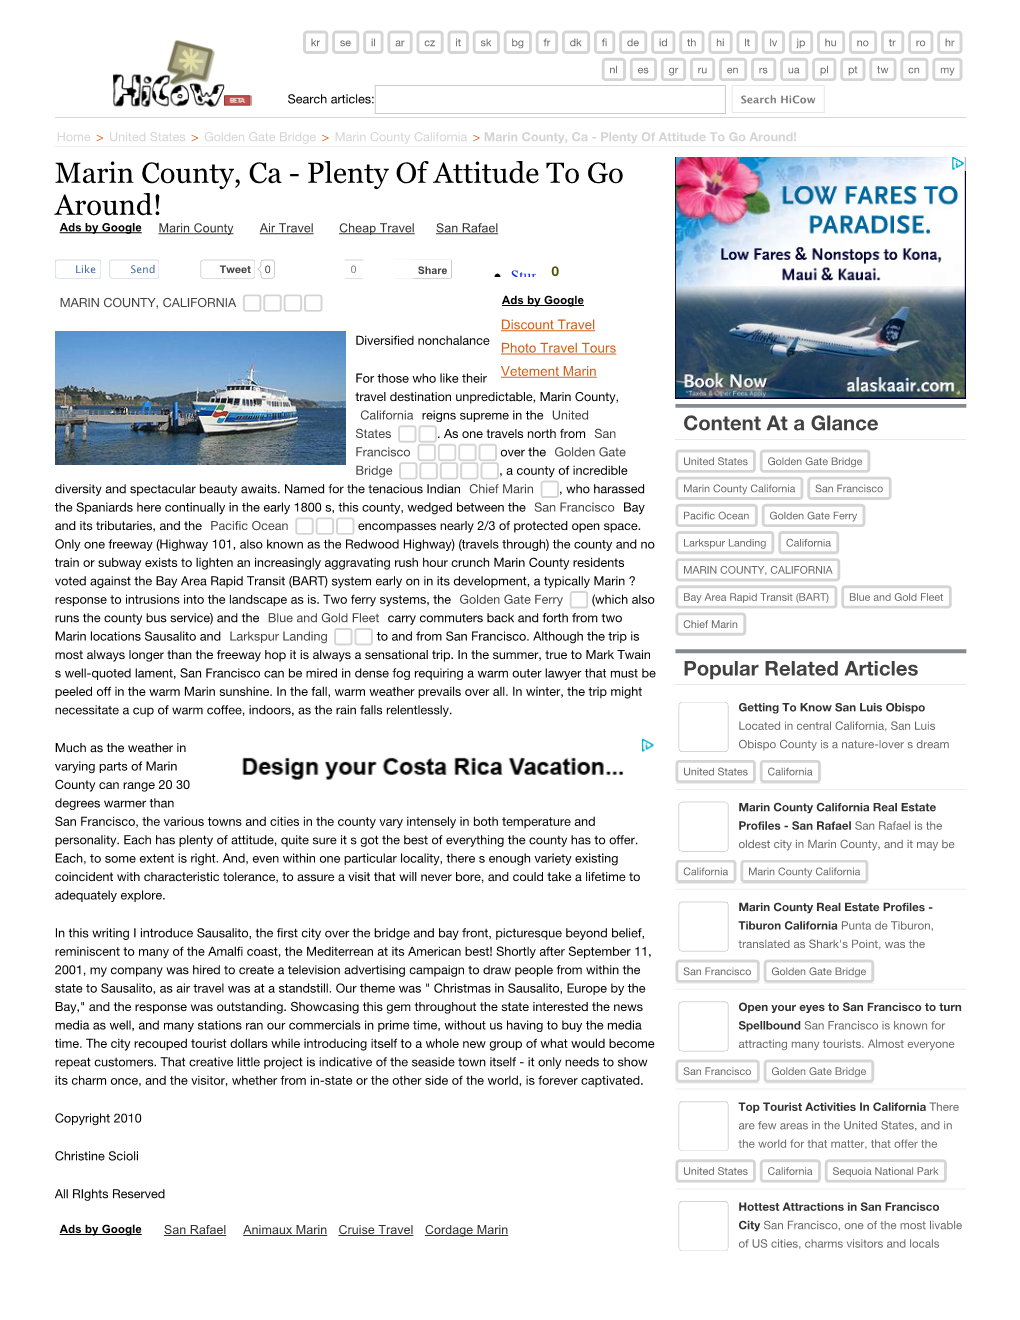 Marin County, Ca - Plenty of Attitude to Go Around! Marin County, Ca - Plenty of Attitude to Go Around! Ads by Google Marin County Air Travel Cheap Travel San Rafael